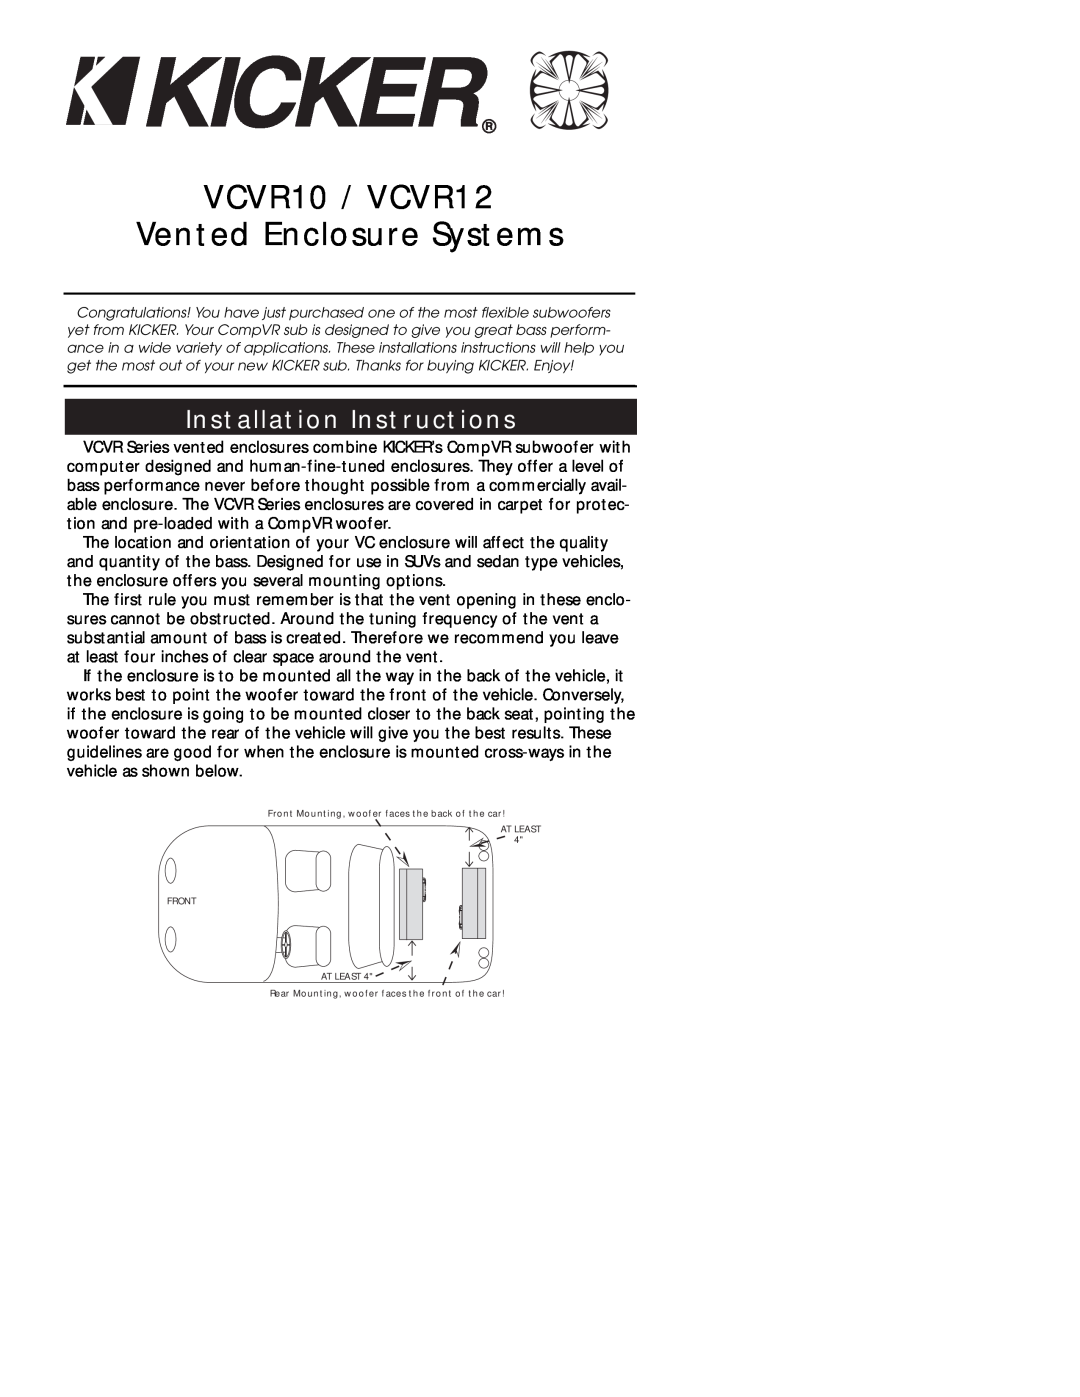 Kicker installation instructions Installation Instructions, VCVR10 / VCVR12, Vented Enclosure Systems 